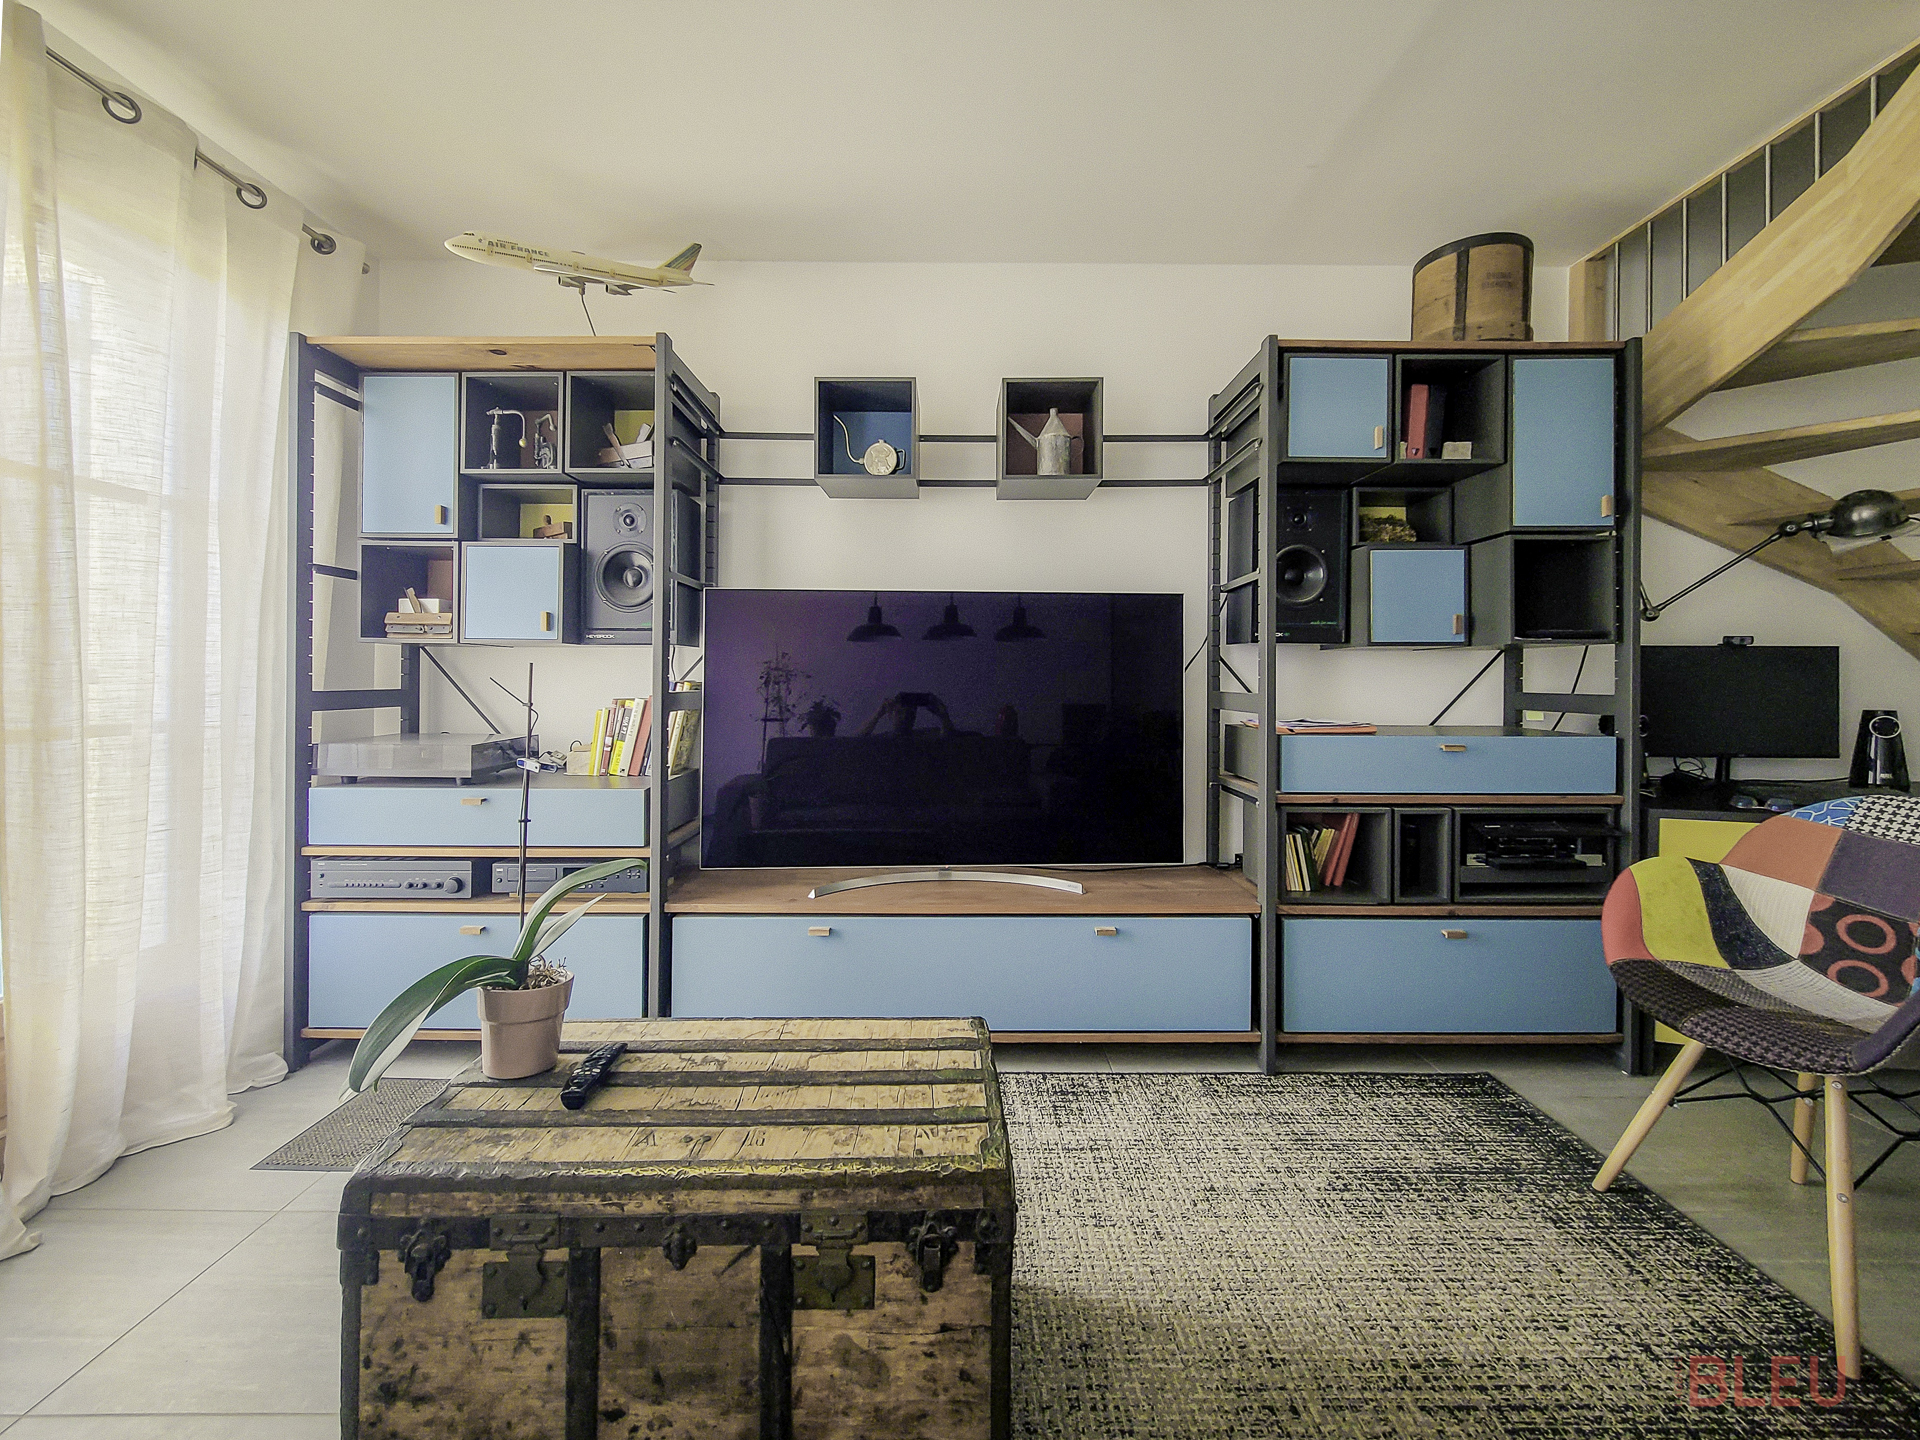 Aménagement intérieur lumineux et fonctionnel par l'Agence Bleu, architecte intérieur Paris, combinant design d’intérieur industriel et éléments éclectiques, avec une unité de rangement modulaire et des meubles sur mesure.